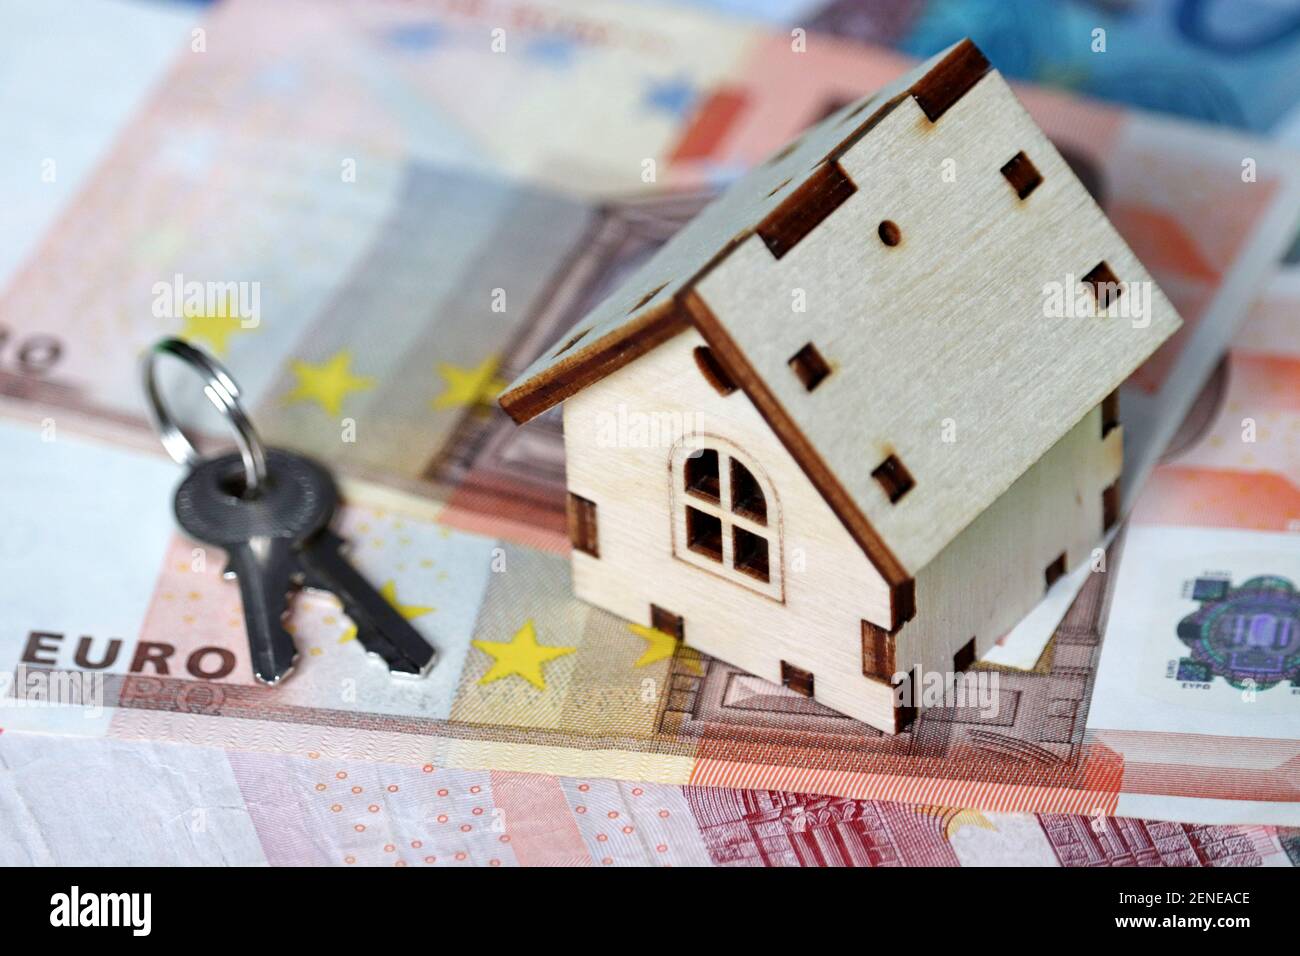 Modello e chiavi di case in legno sullo sfondo delle banconote in euro. Mercato immobiliare, acquisto o affitto di immobili in Europa Foto Stock